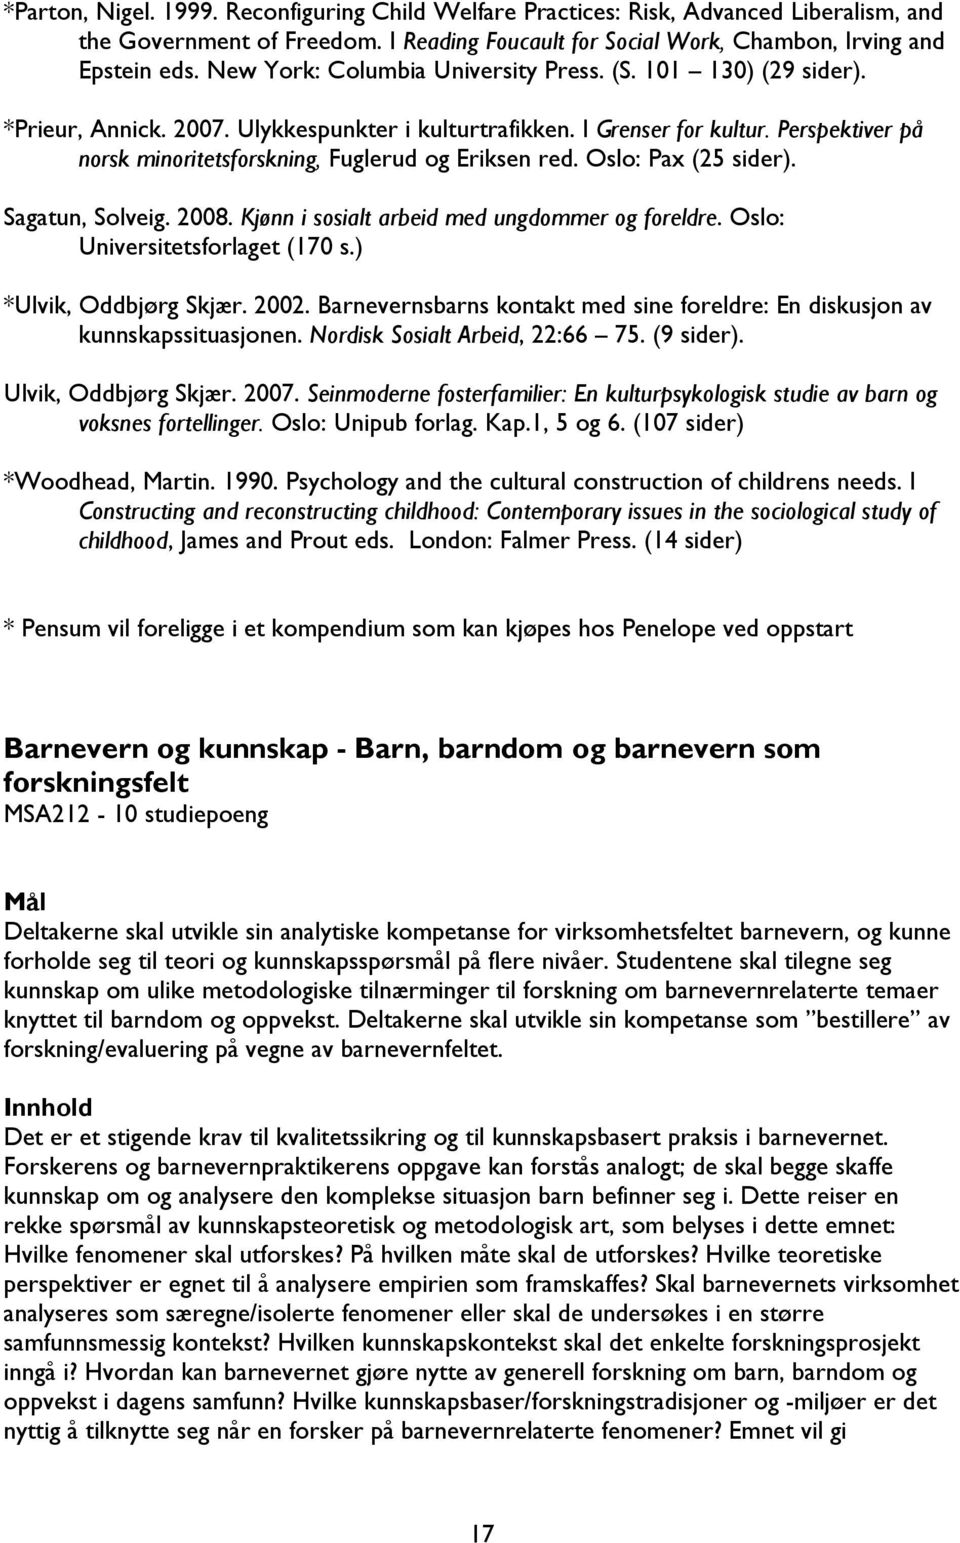 Perspektiver på norsk minoritetsforskning, Fuglerud og Eriksen red. Oslo: Pax (25 sider). Sagatun, Solveig. 2008. Kjønn i sosialt arbeid med ungdommer og foreldre. Oslo: Universitetsforlaget (170 s.